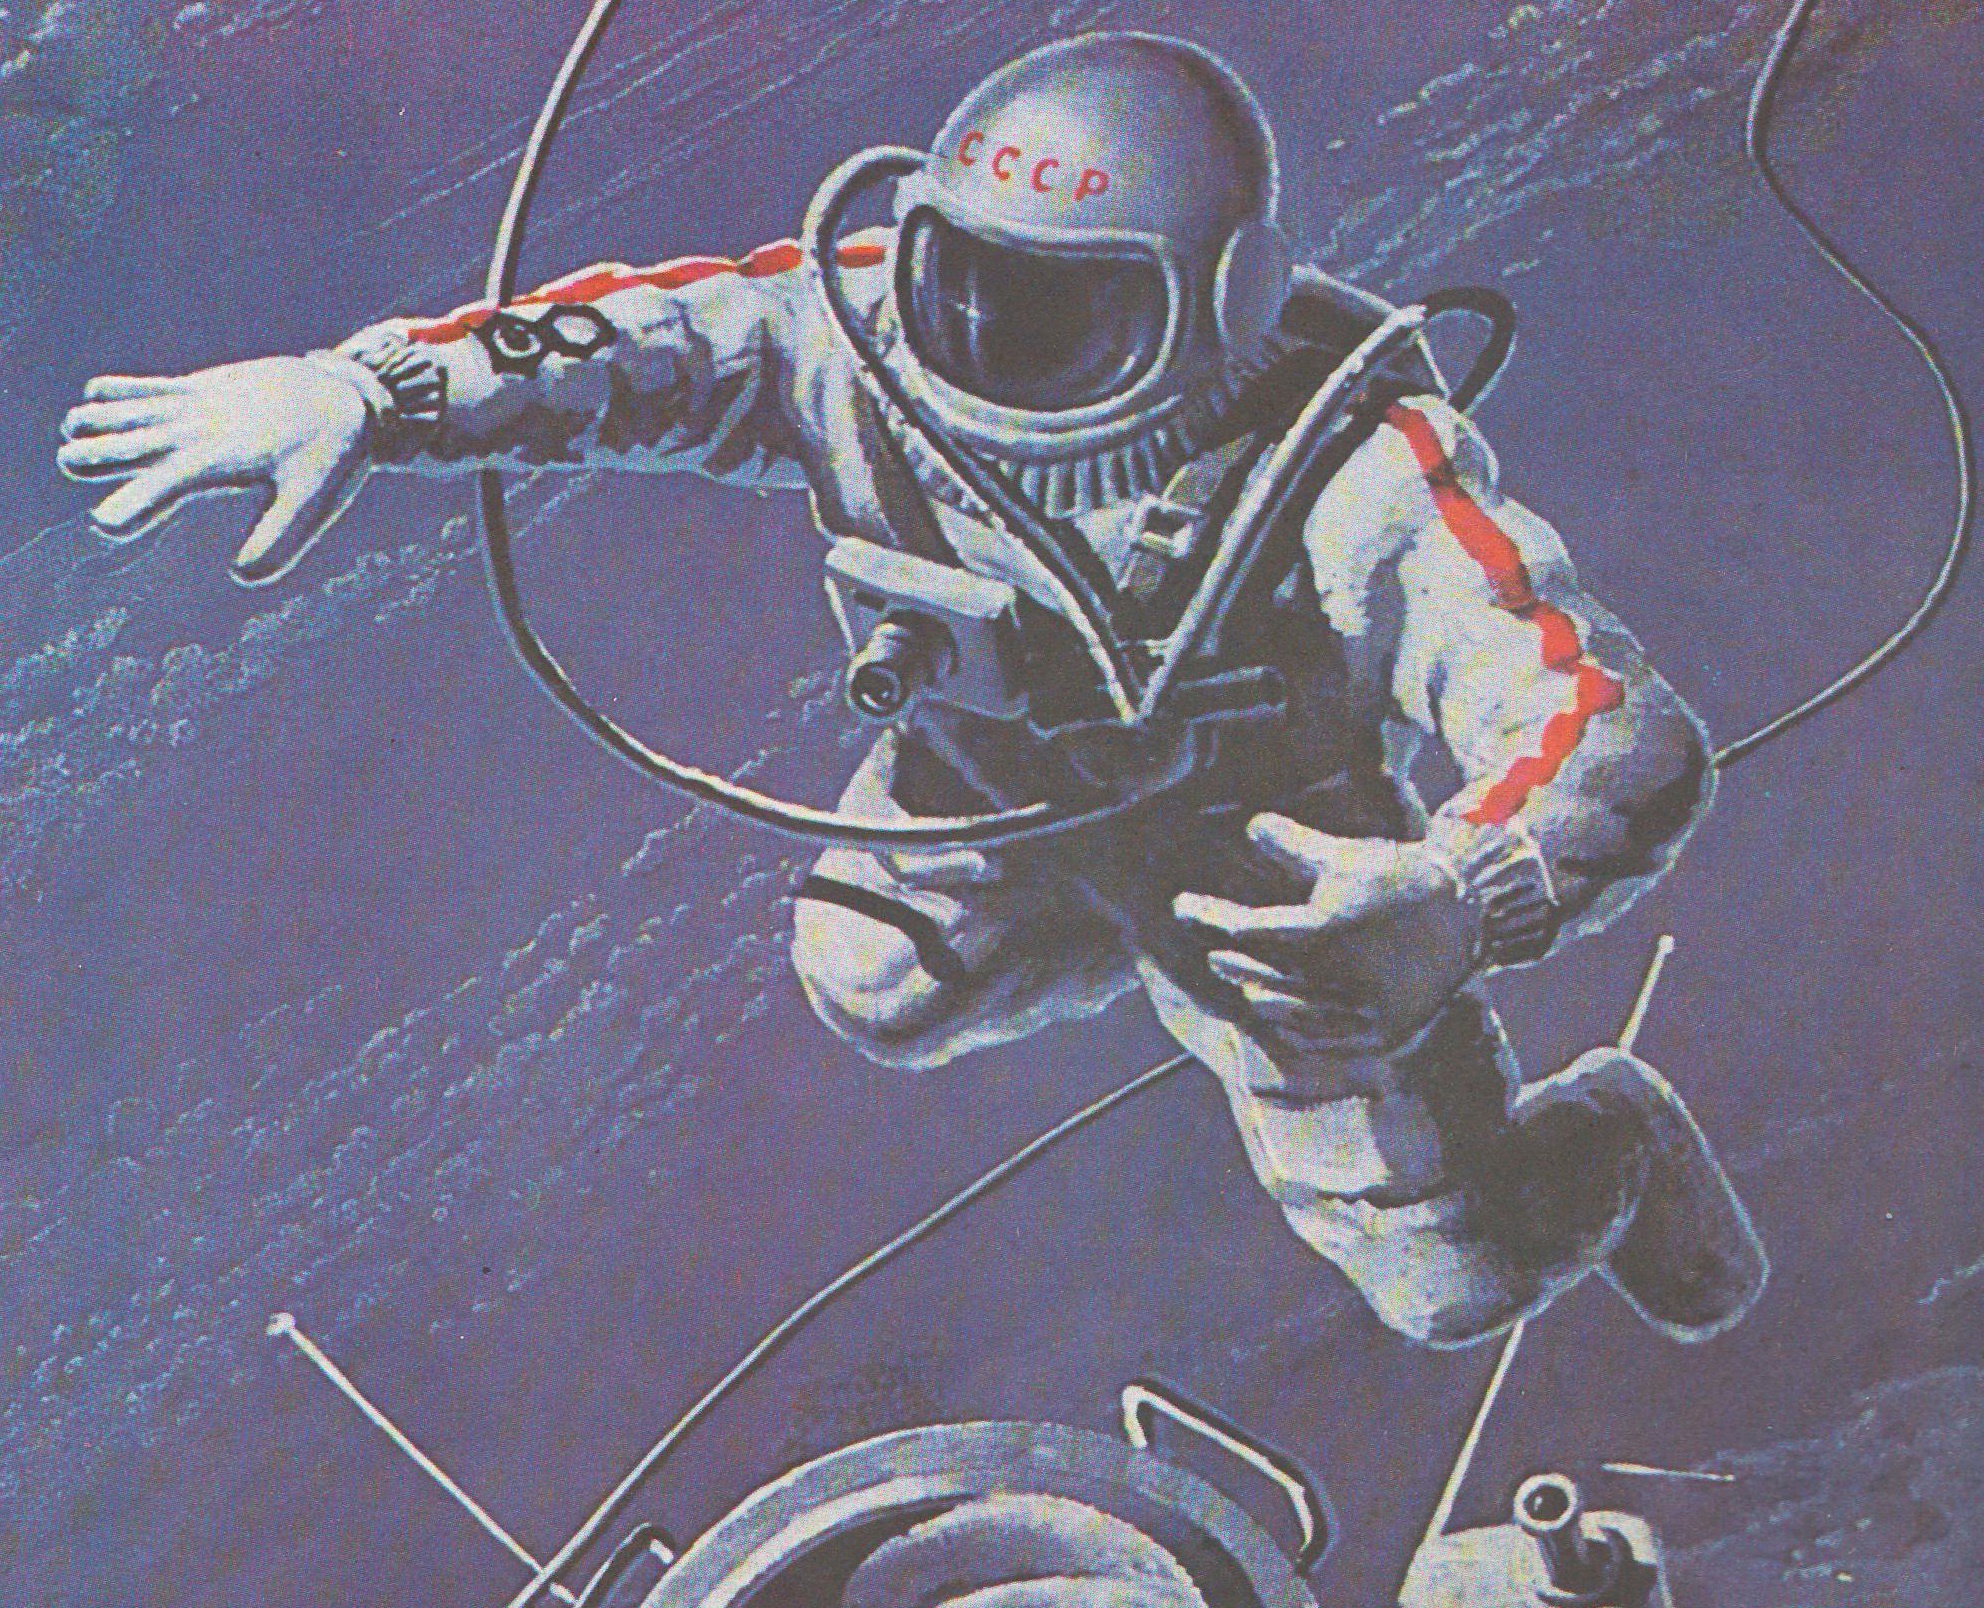 Первый выход в открытый космос дата. Космонавт Леонов в открытом космосе. Джанибеков космонавт художник. Выход человека в открытый космос Леонов.